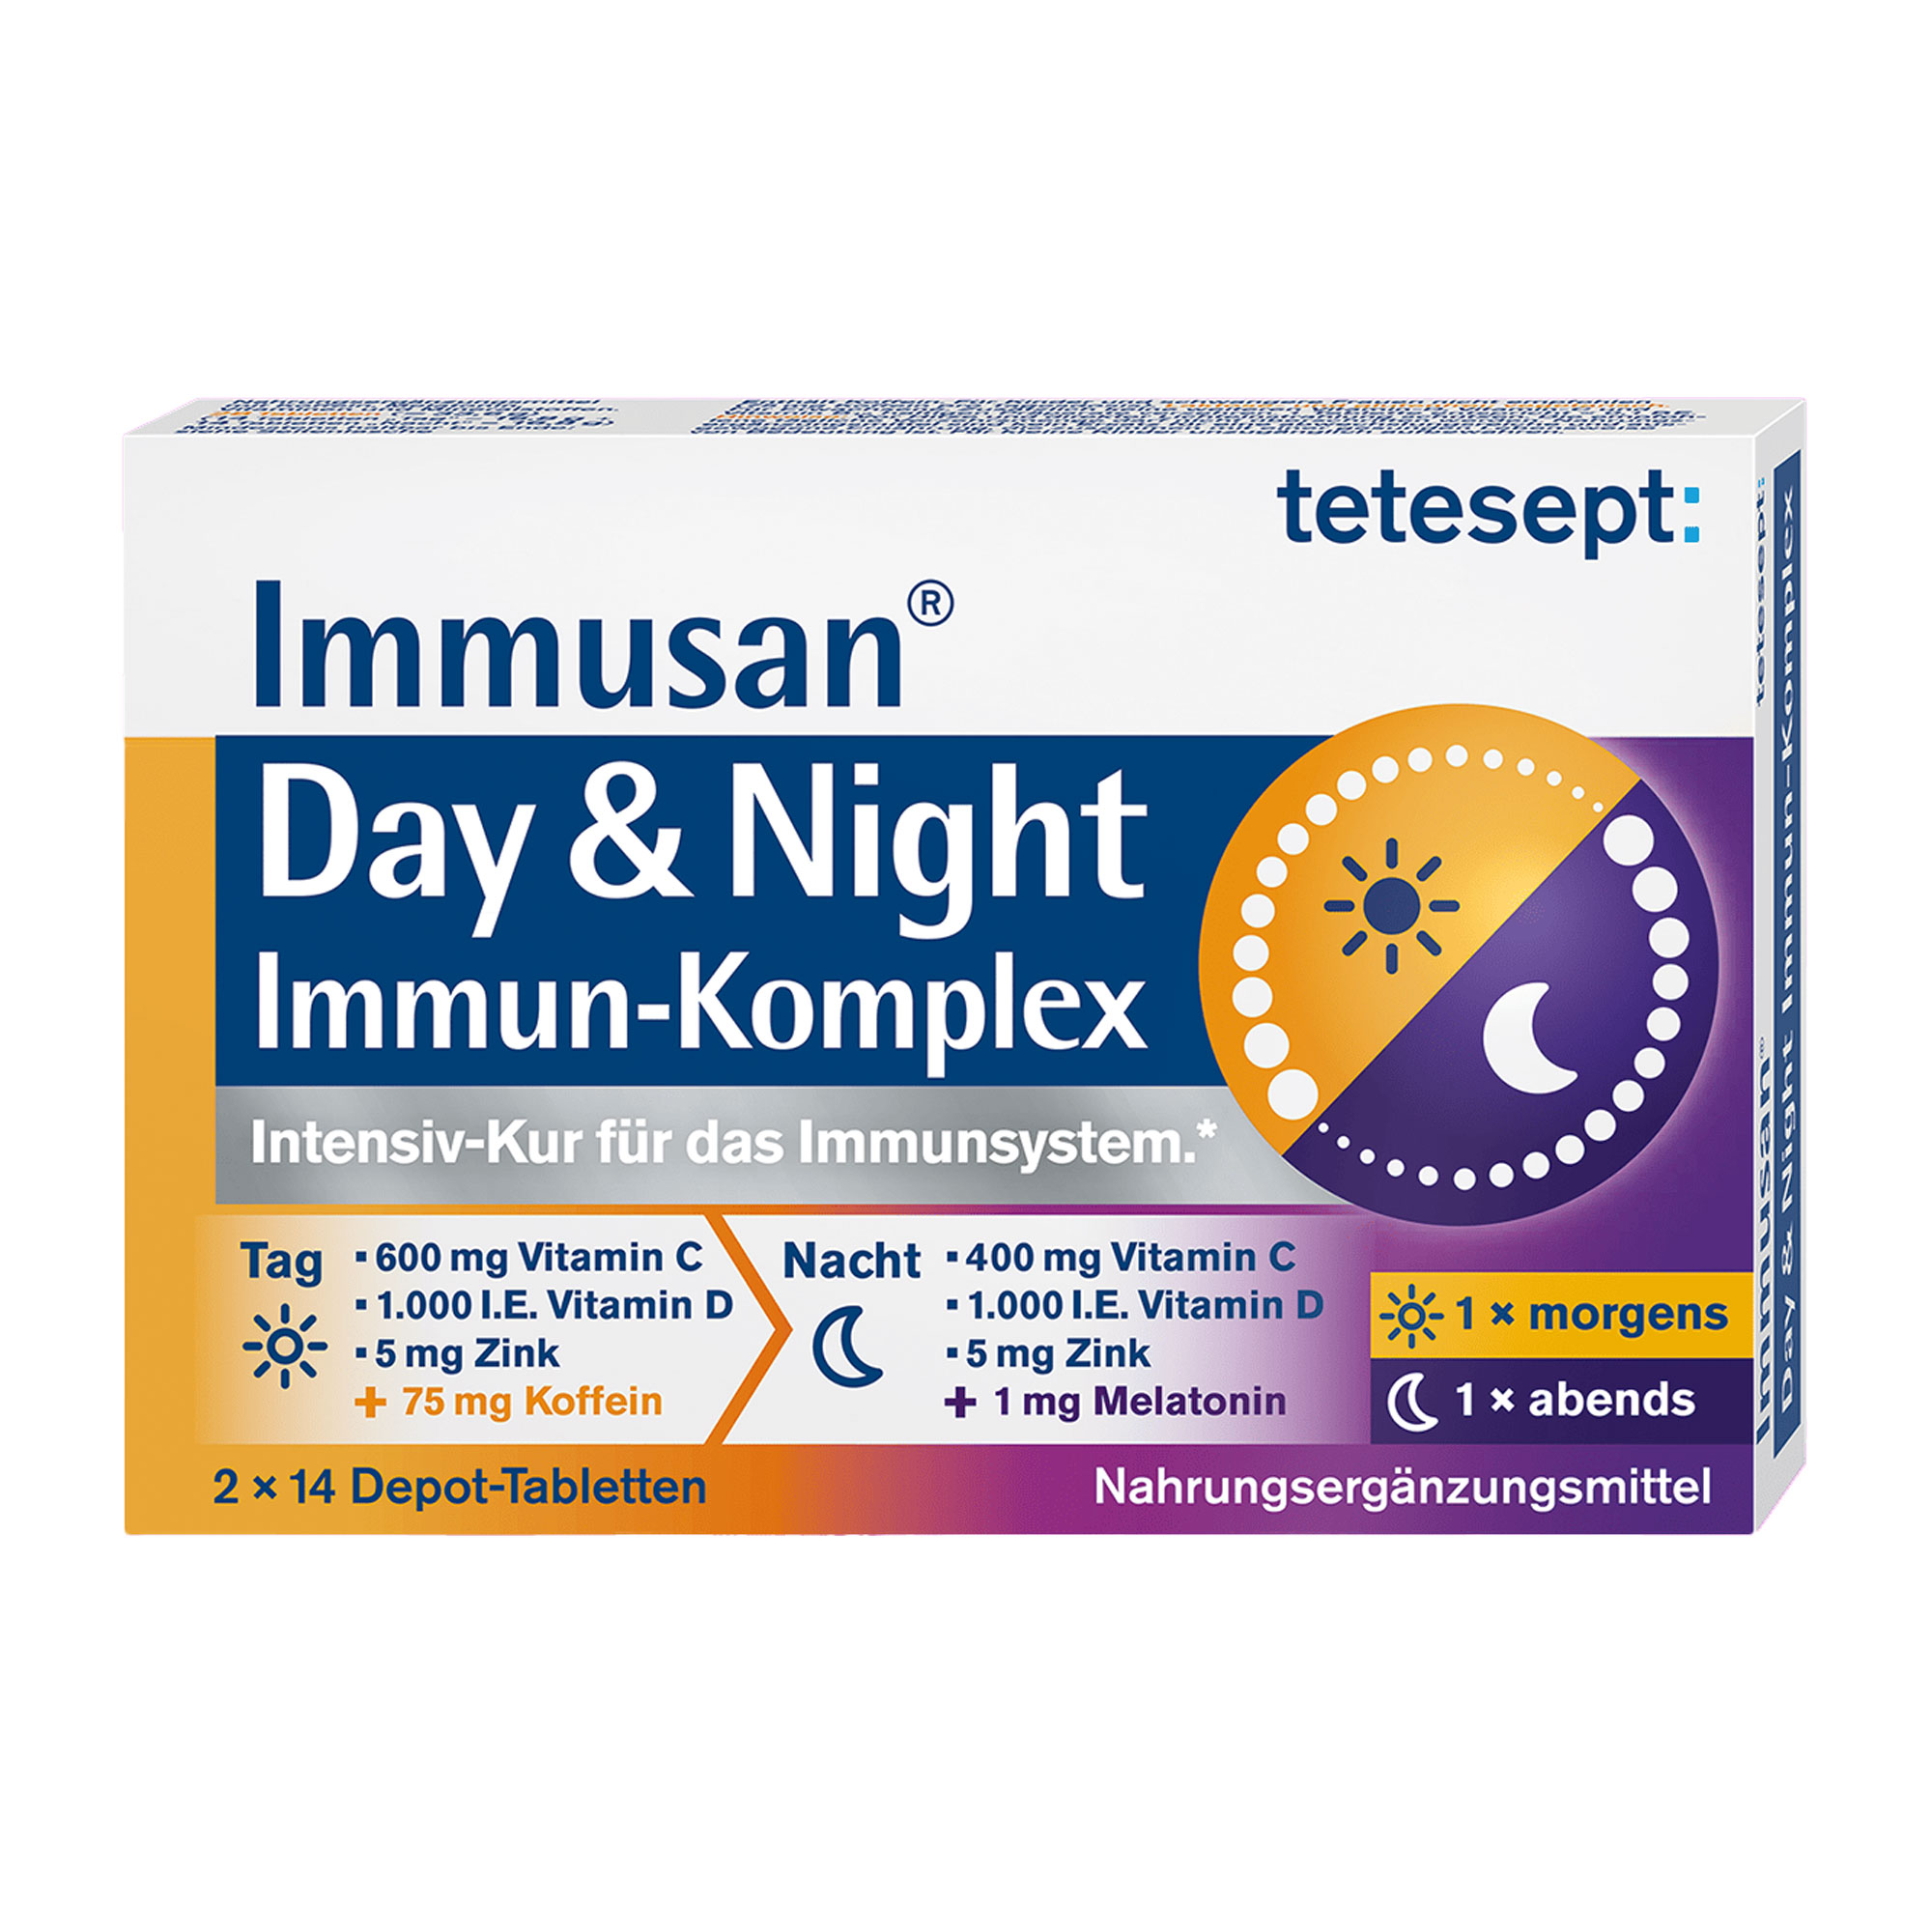 Nahrungsergänzungsmittel mit Vitamin C, D, Zink und Selen. Tag- und Nacht-Depot-Tabletten zur Unterstützung des Immunsystems.